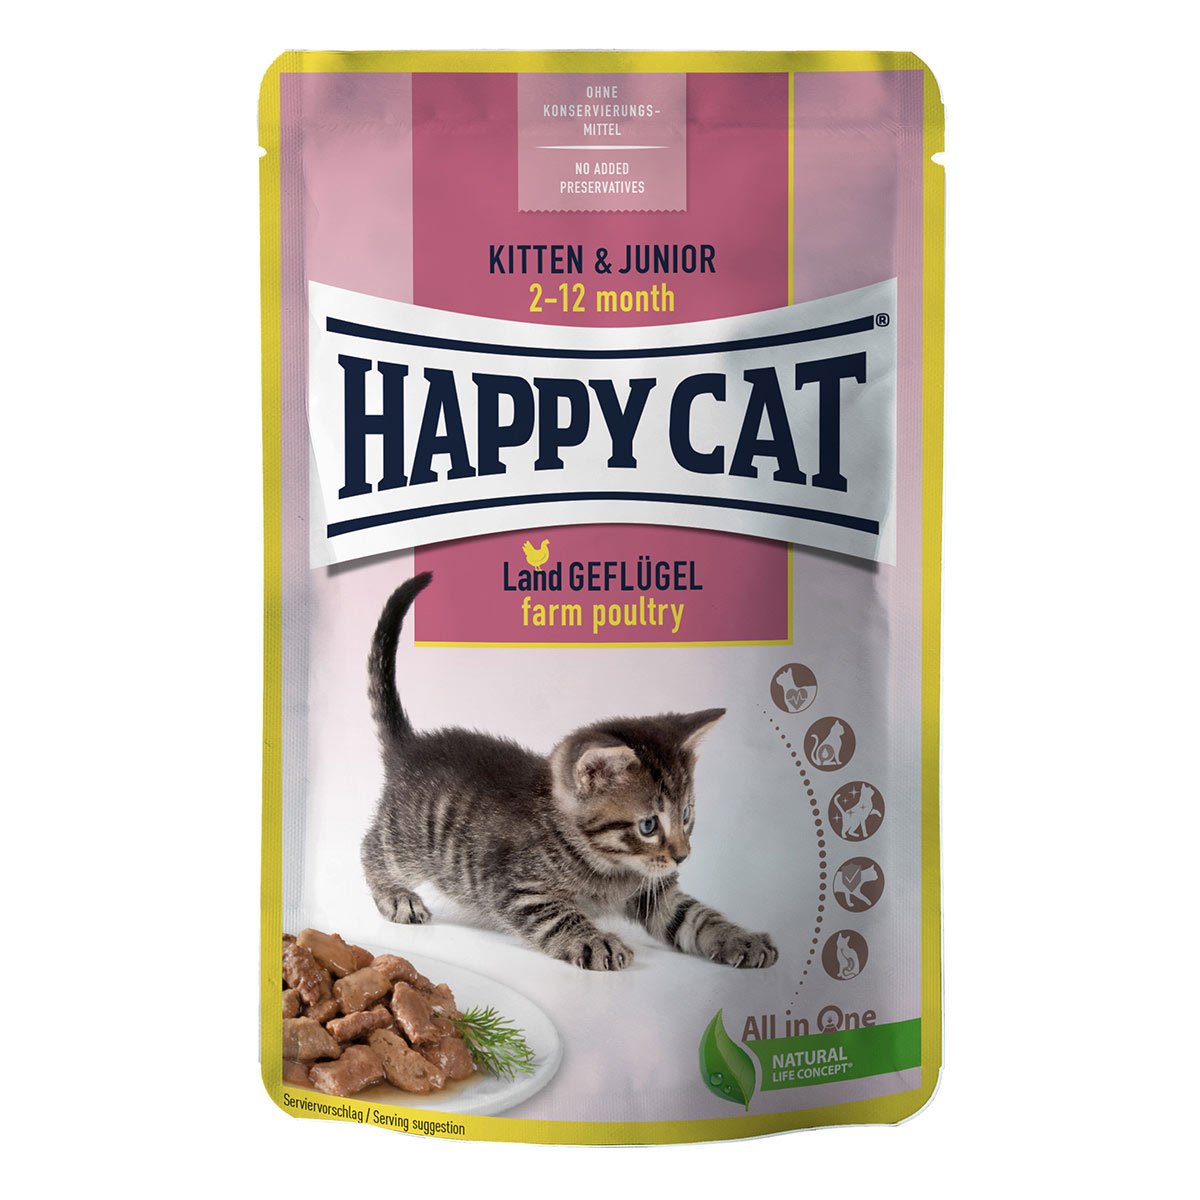 Happy Cat Tray Kitten & Junior Land Geflügel 24x85g